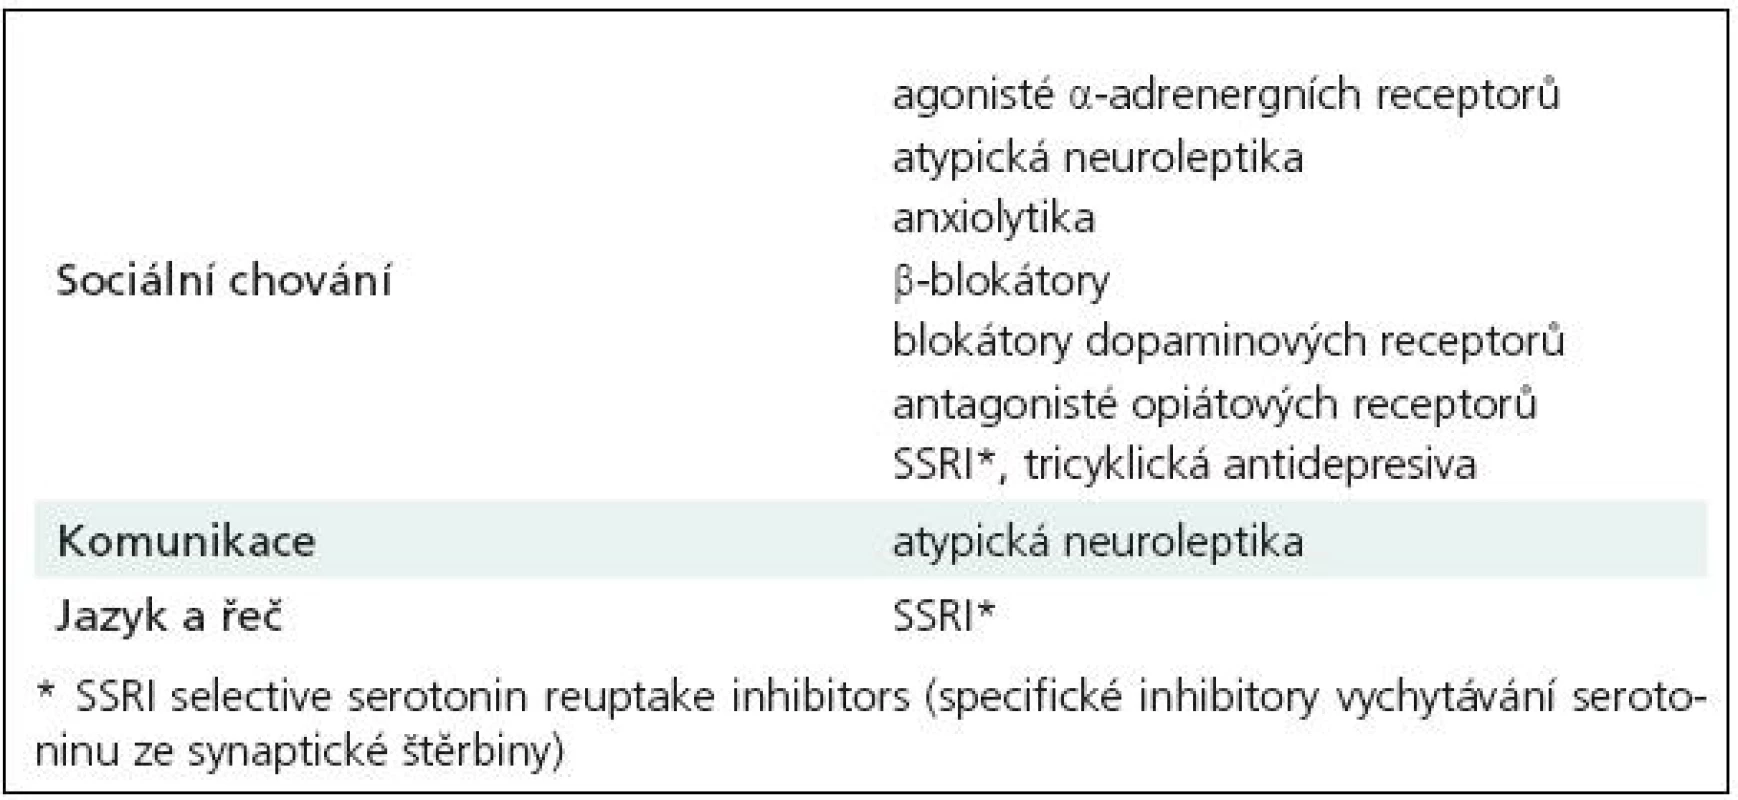 Neurofarmaka využívaná ve snaze o farmakologické ovlivnění jádrových příznaků autizmu.